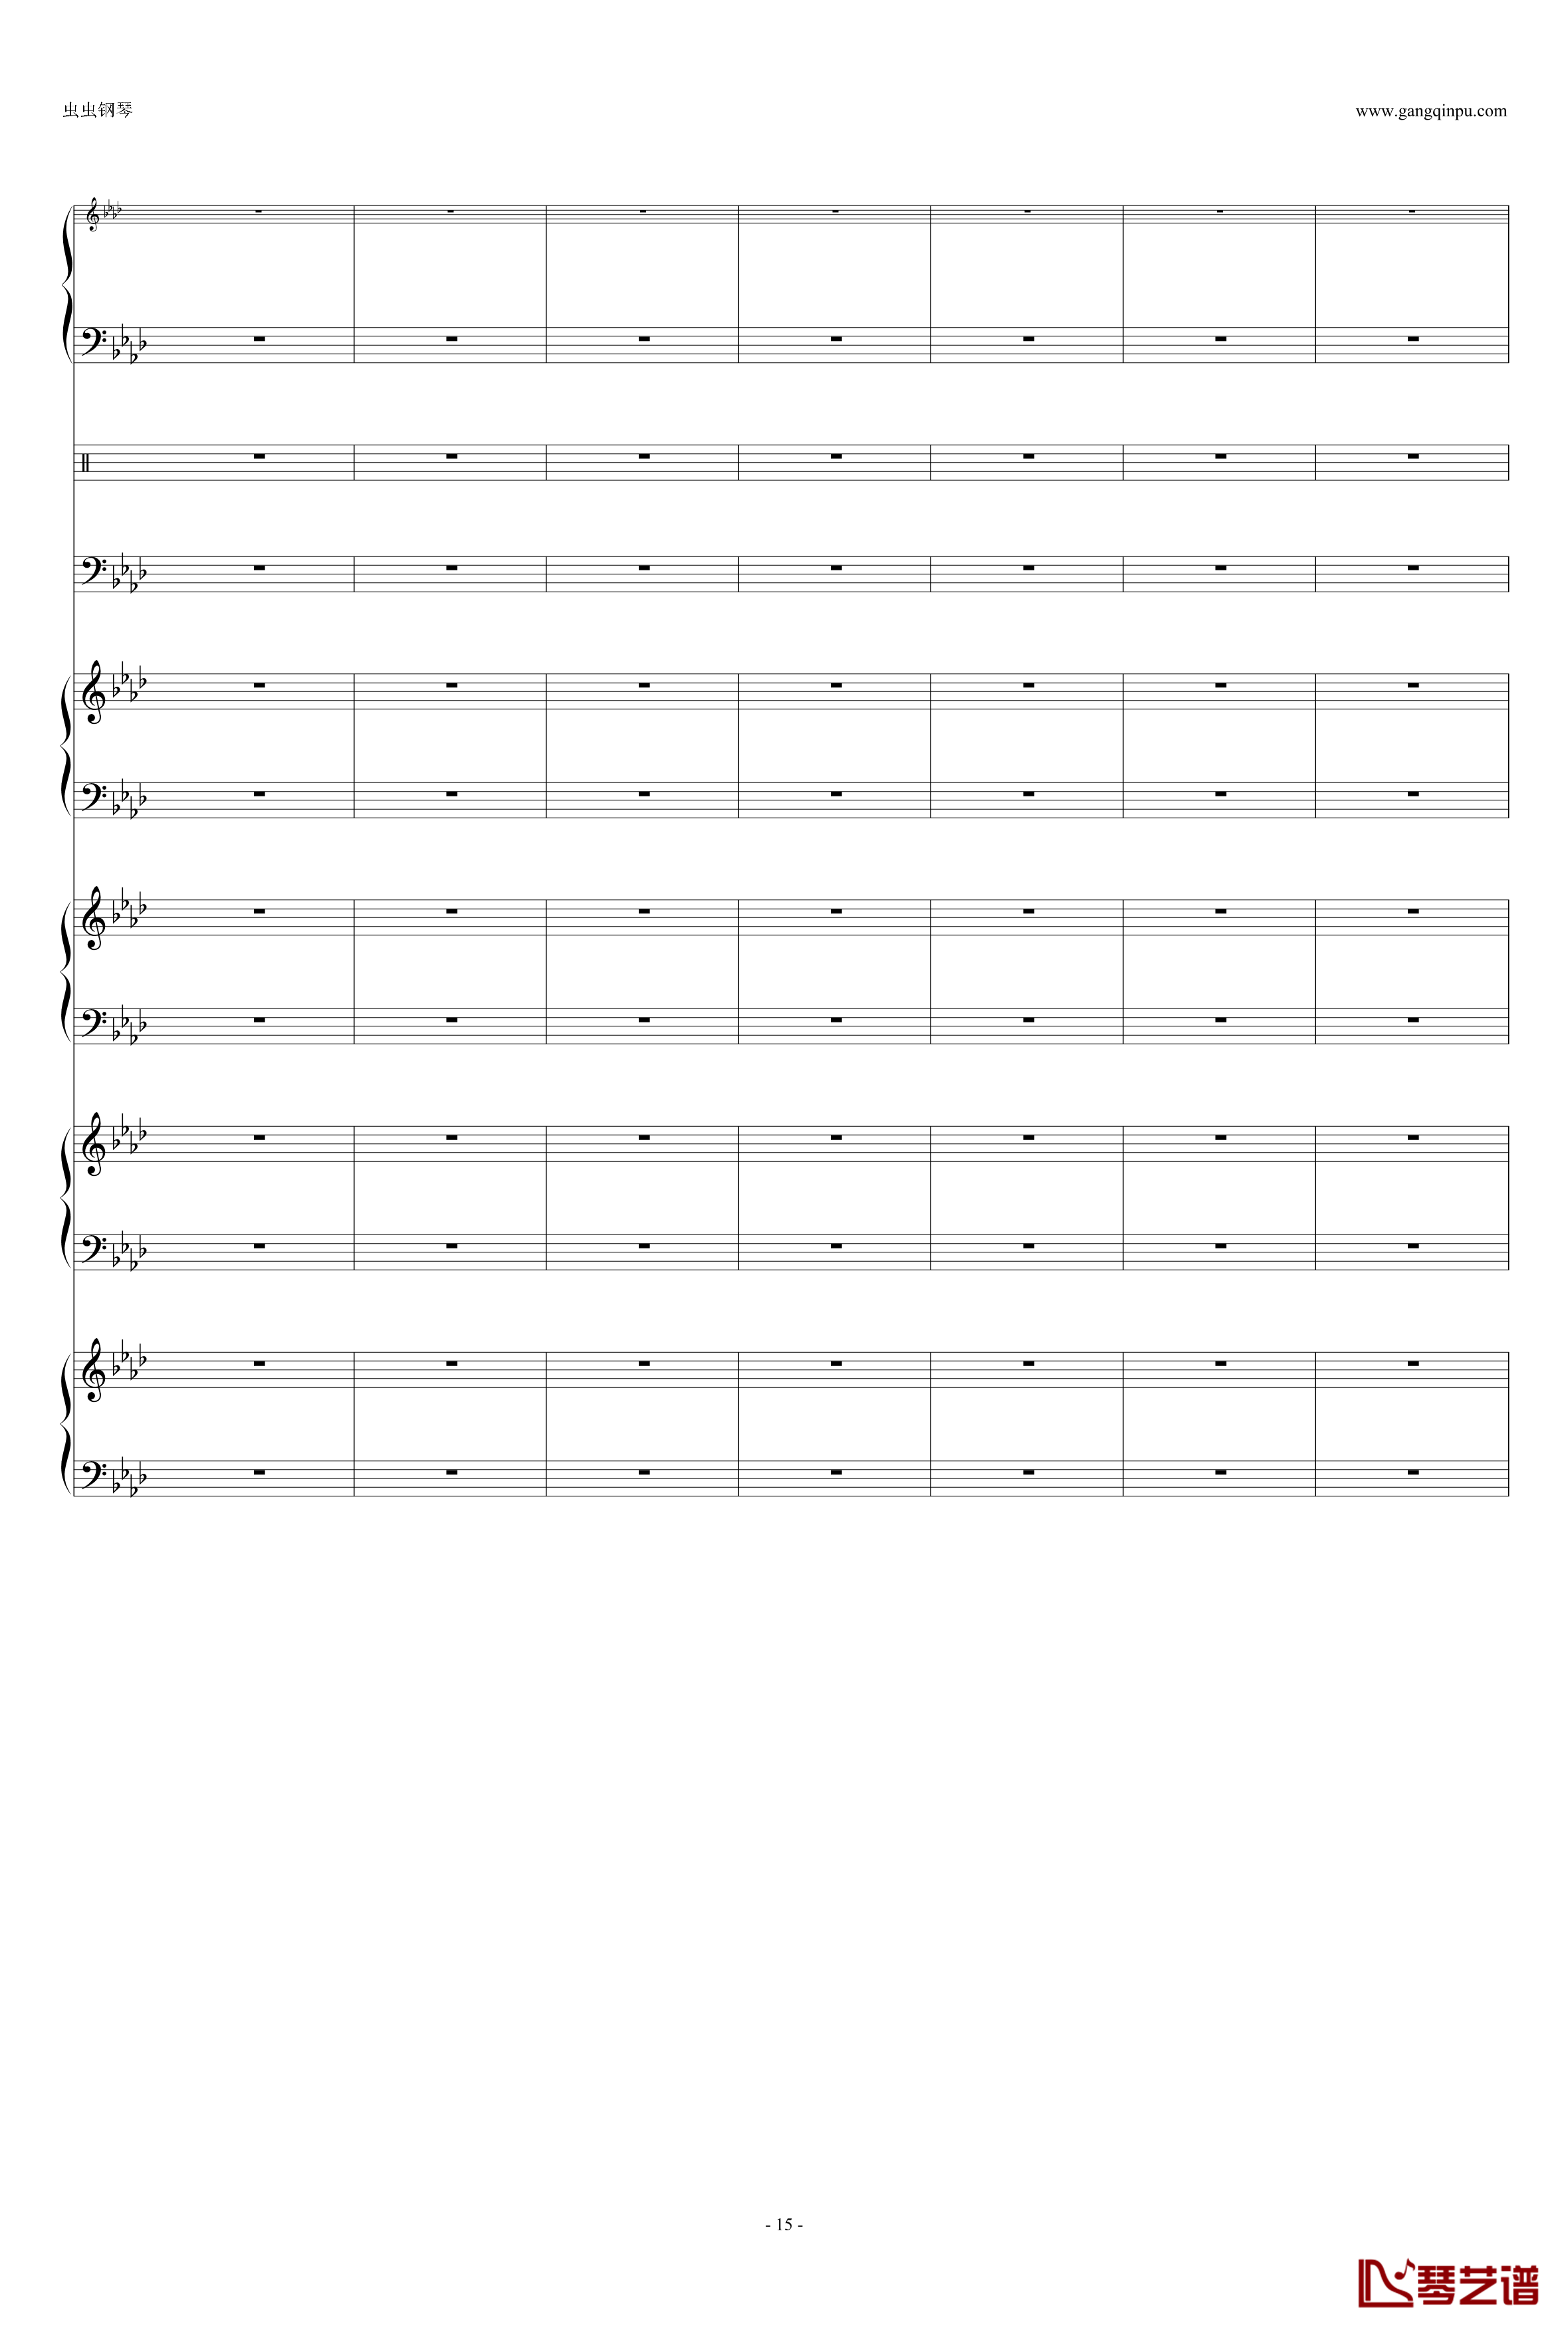 热情奏鸣曲 加小乐队伴奏-贝多芬-beethoven15